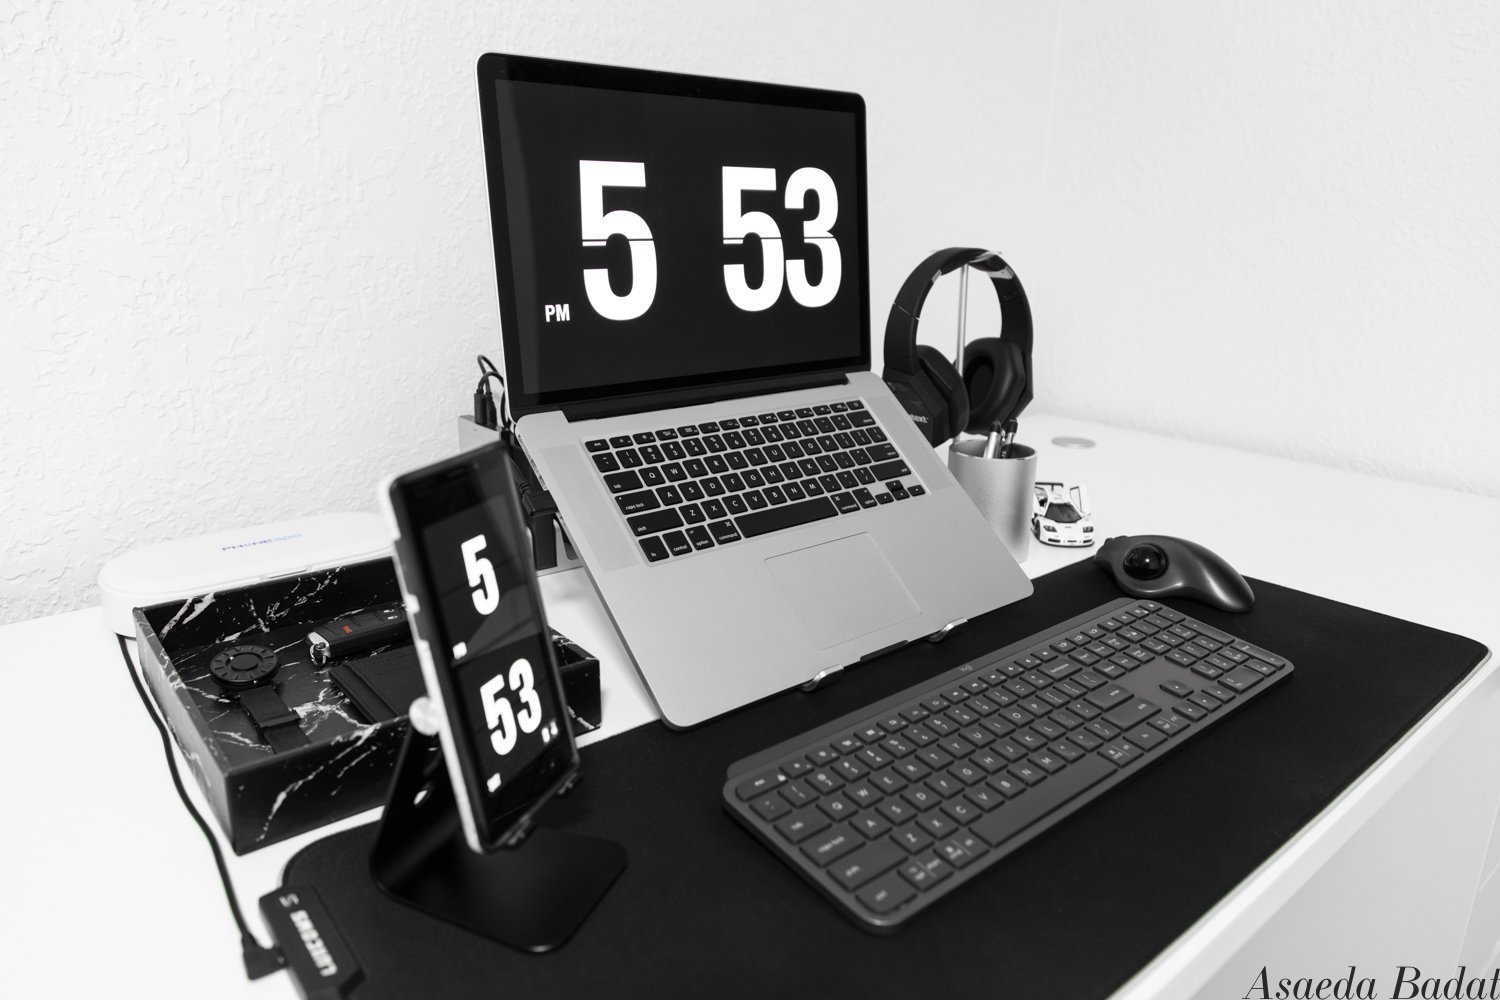 Asaeda_Amazon Black White Minimal Minimalist Minimalistic Desk Setup_045-Edit.jpg